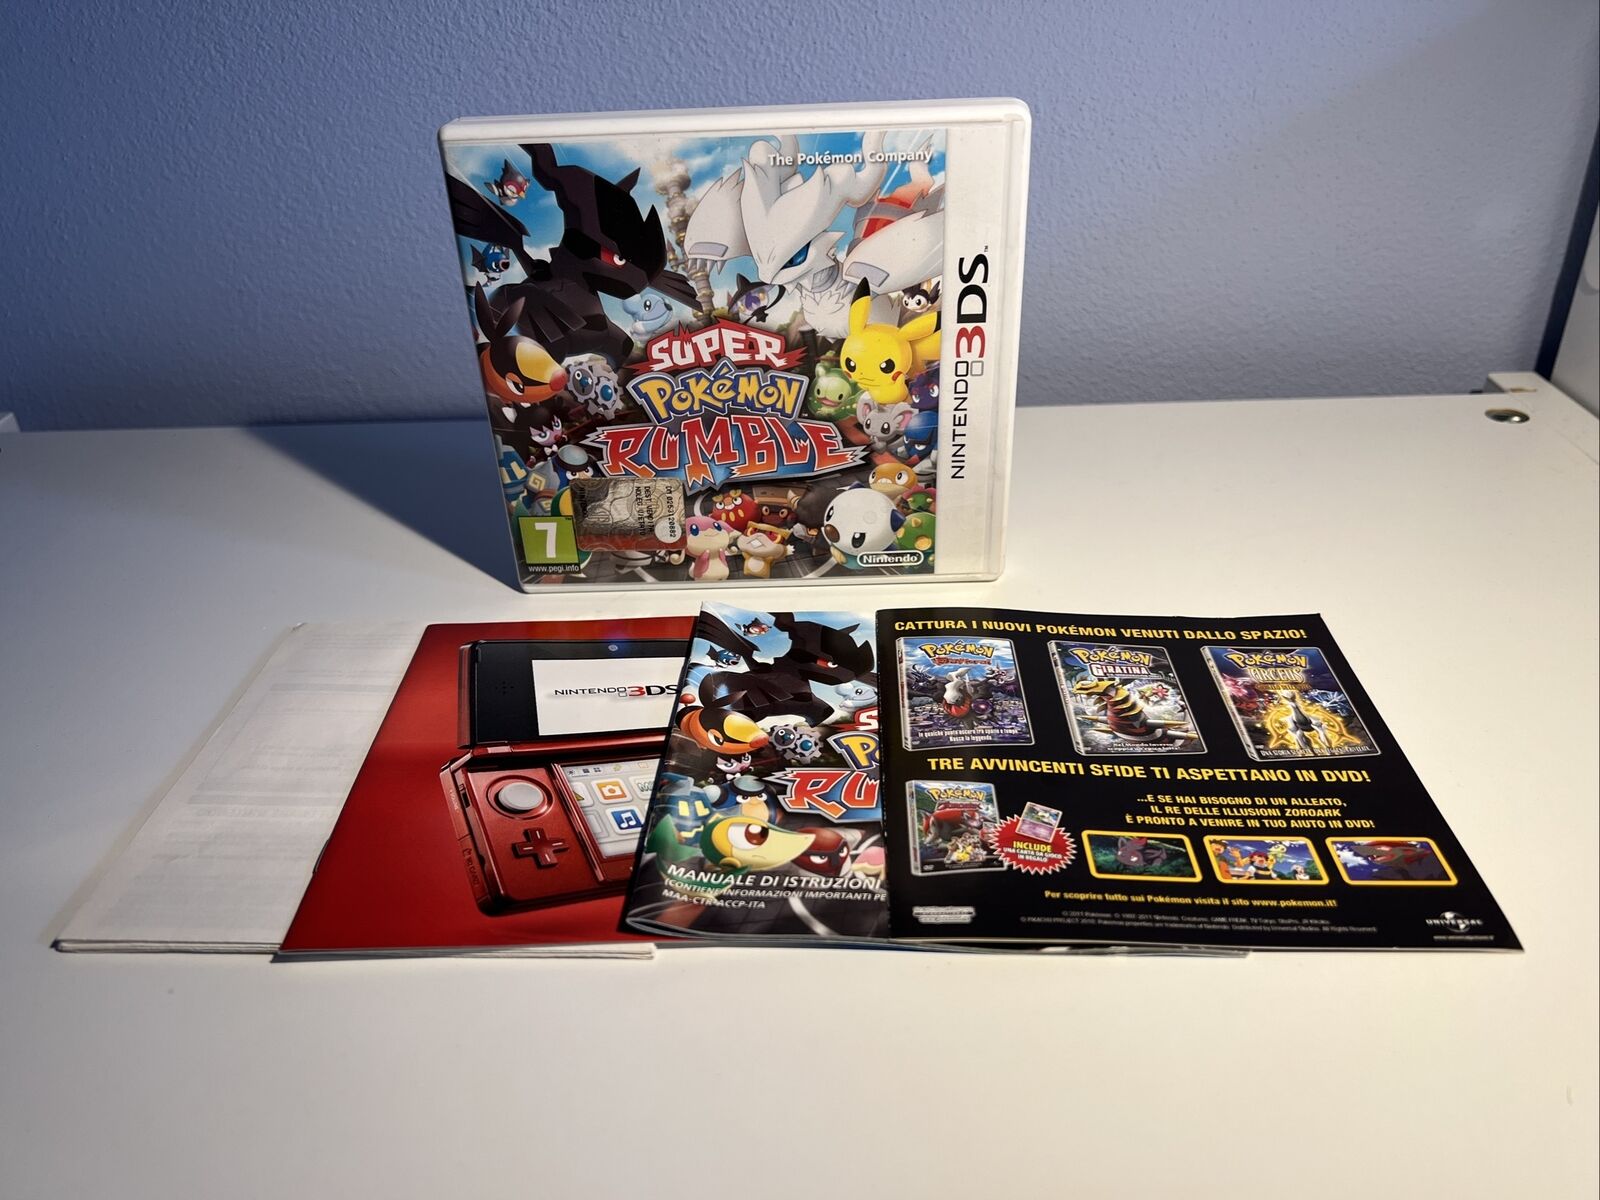 Nintendo-3DS2DS-Videogioco-Super-Pokemon-Rumble-144253813033-5